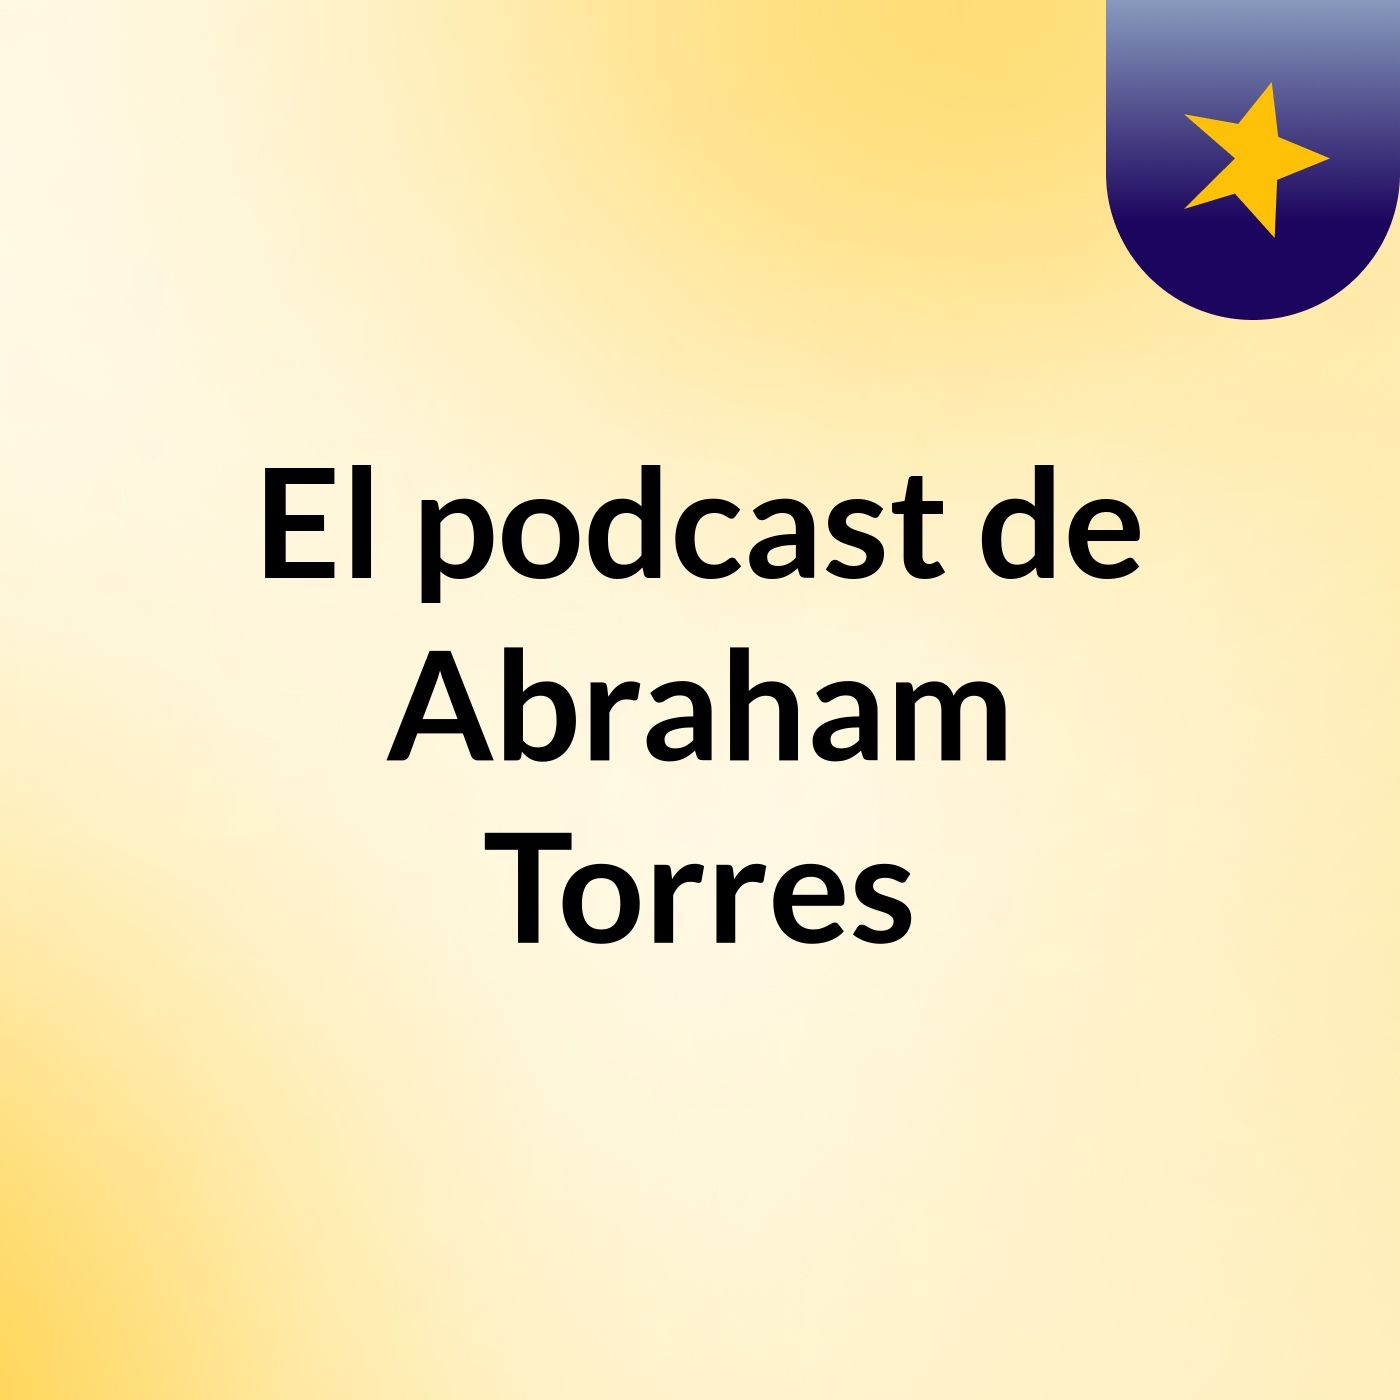 El podcast de Abraham Torres